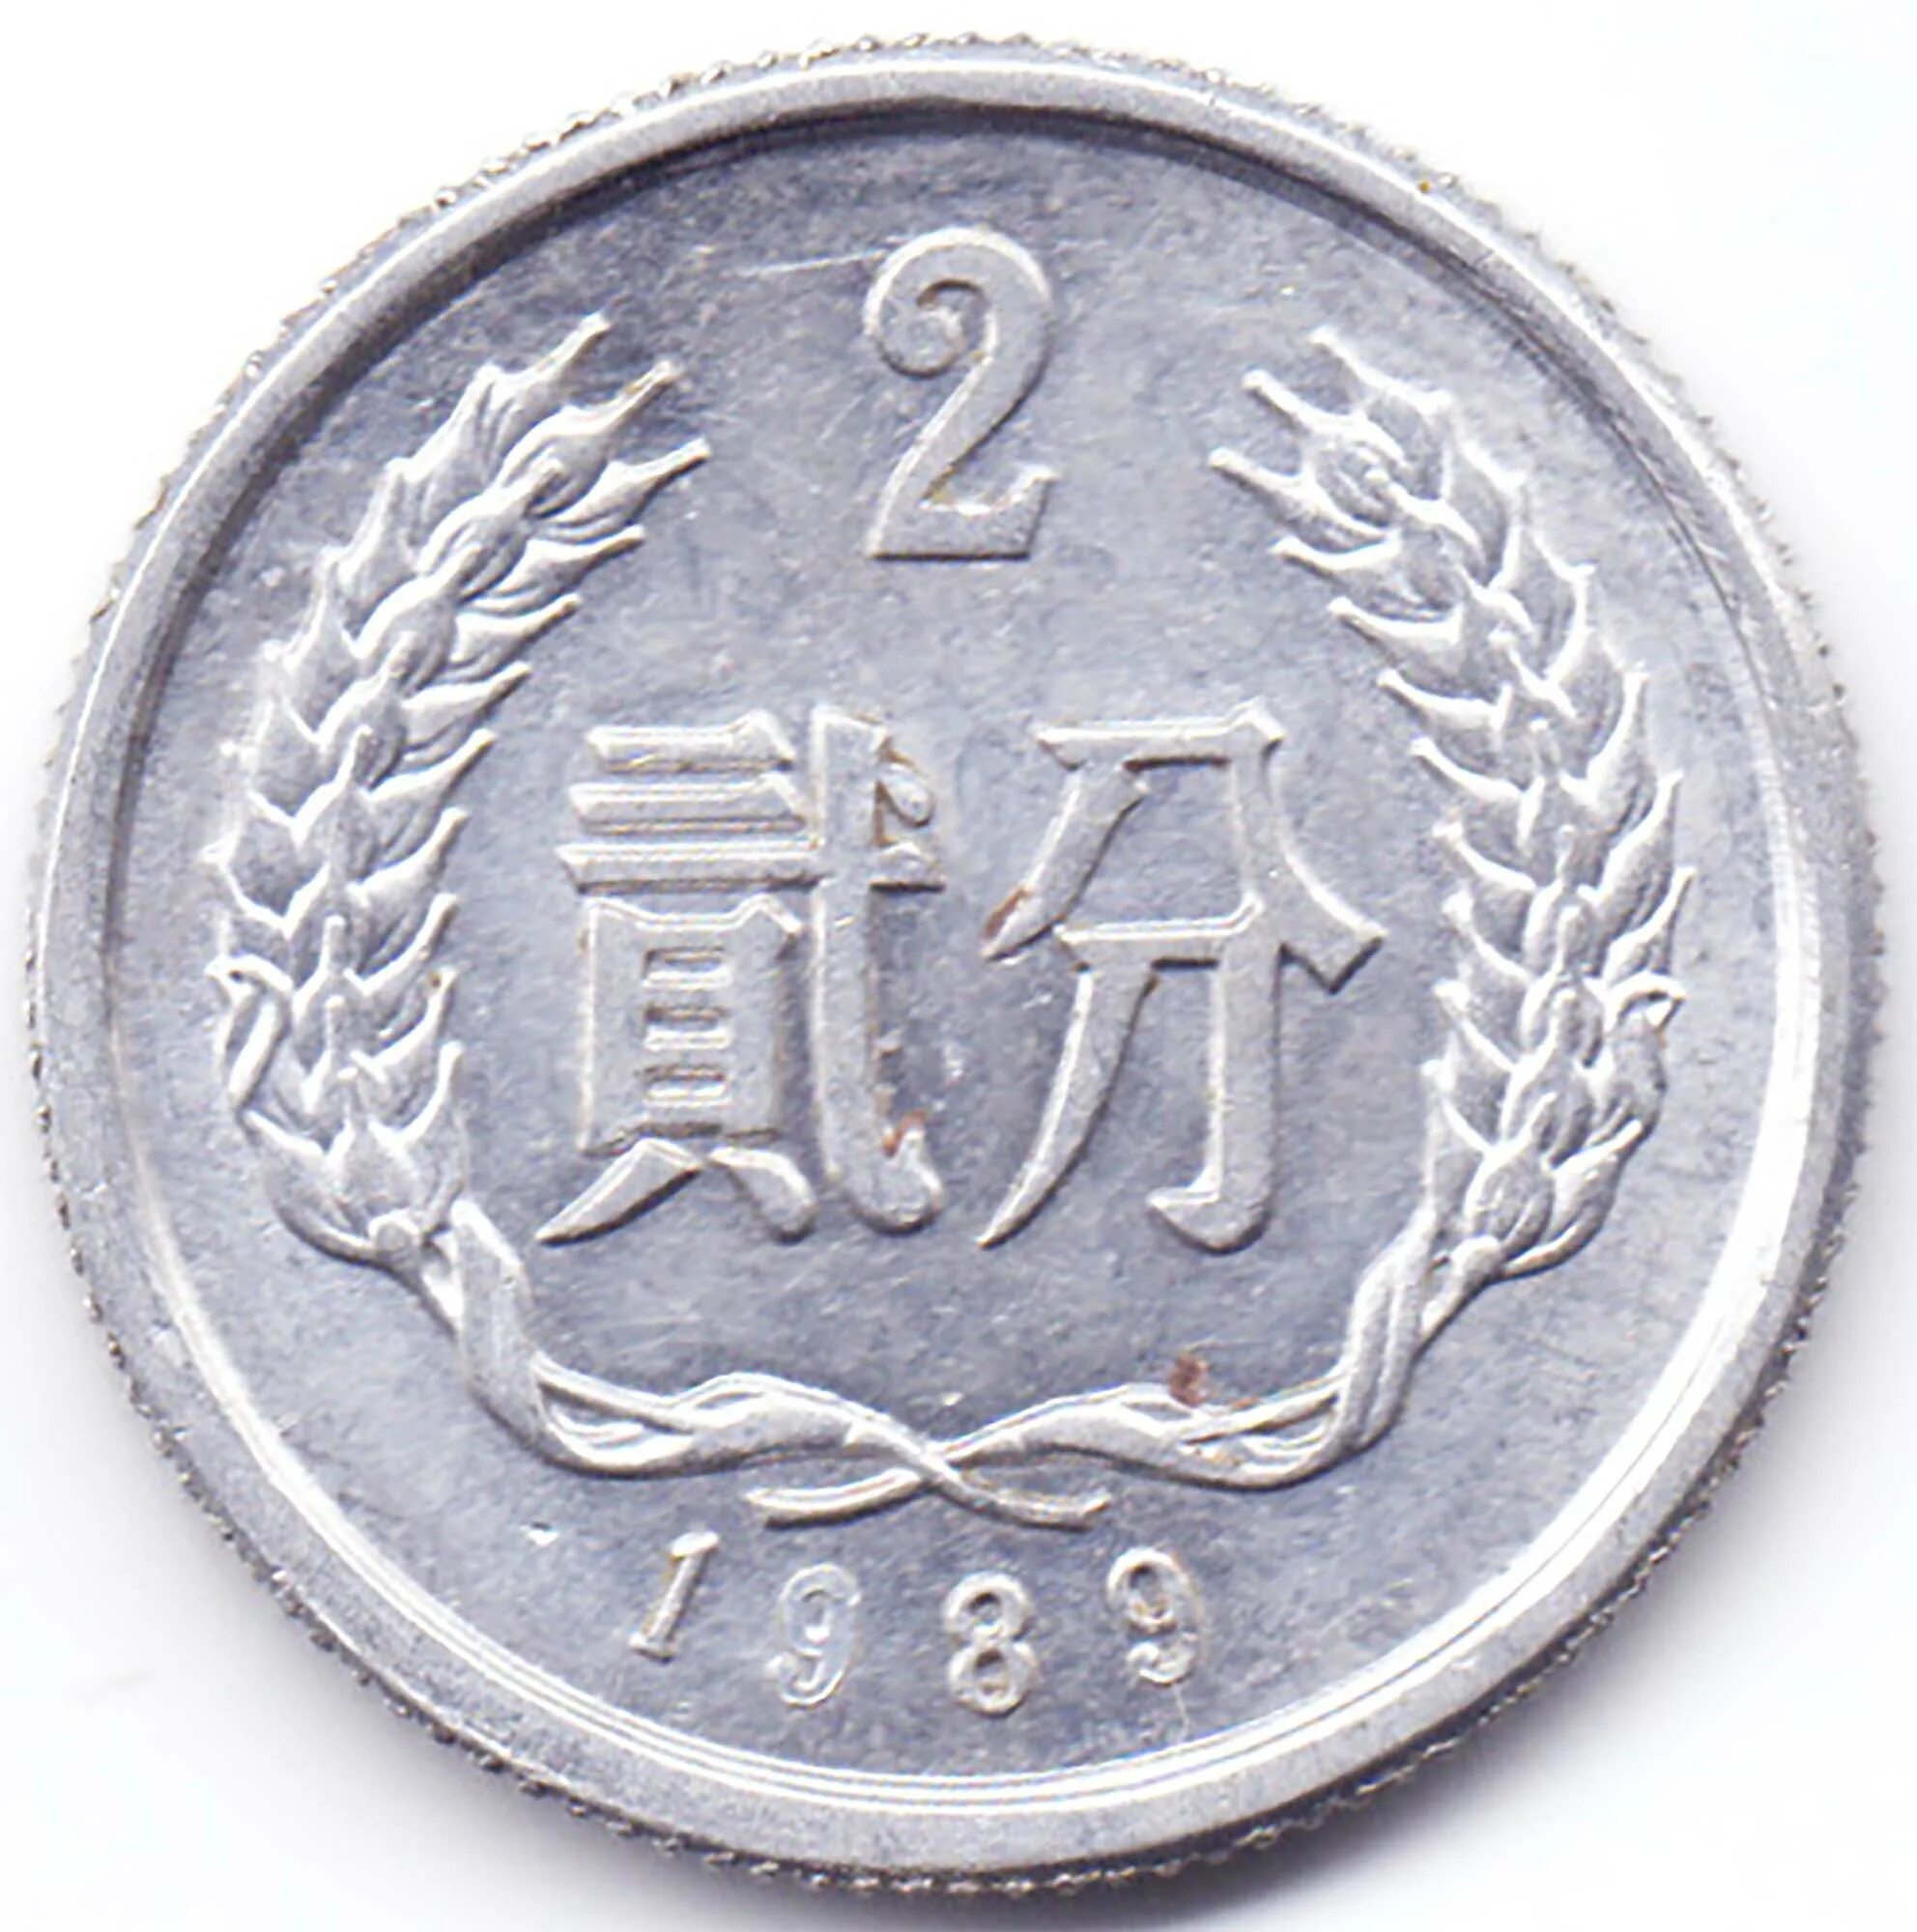 2 Фень Китай. Монета Китай 2 фэнь 1956 года. Монета 2 фэней. Монета Фень Китай.